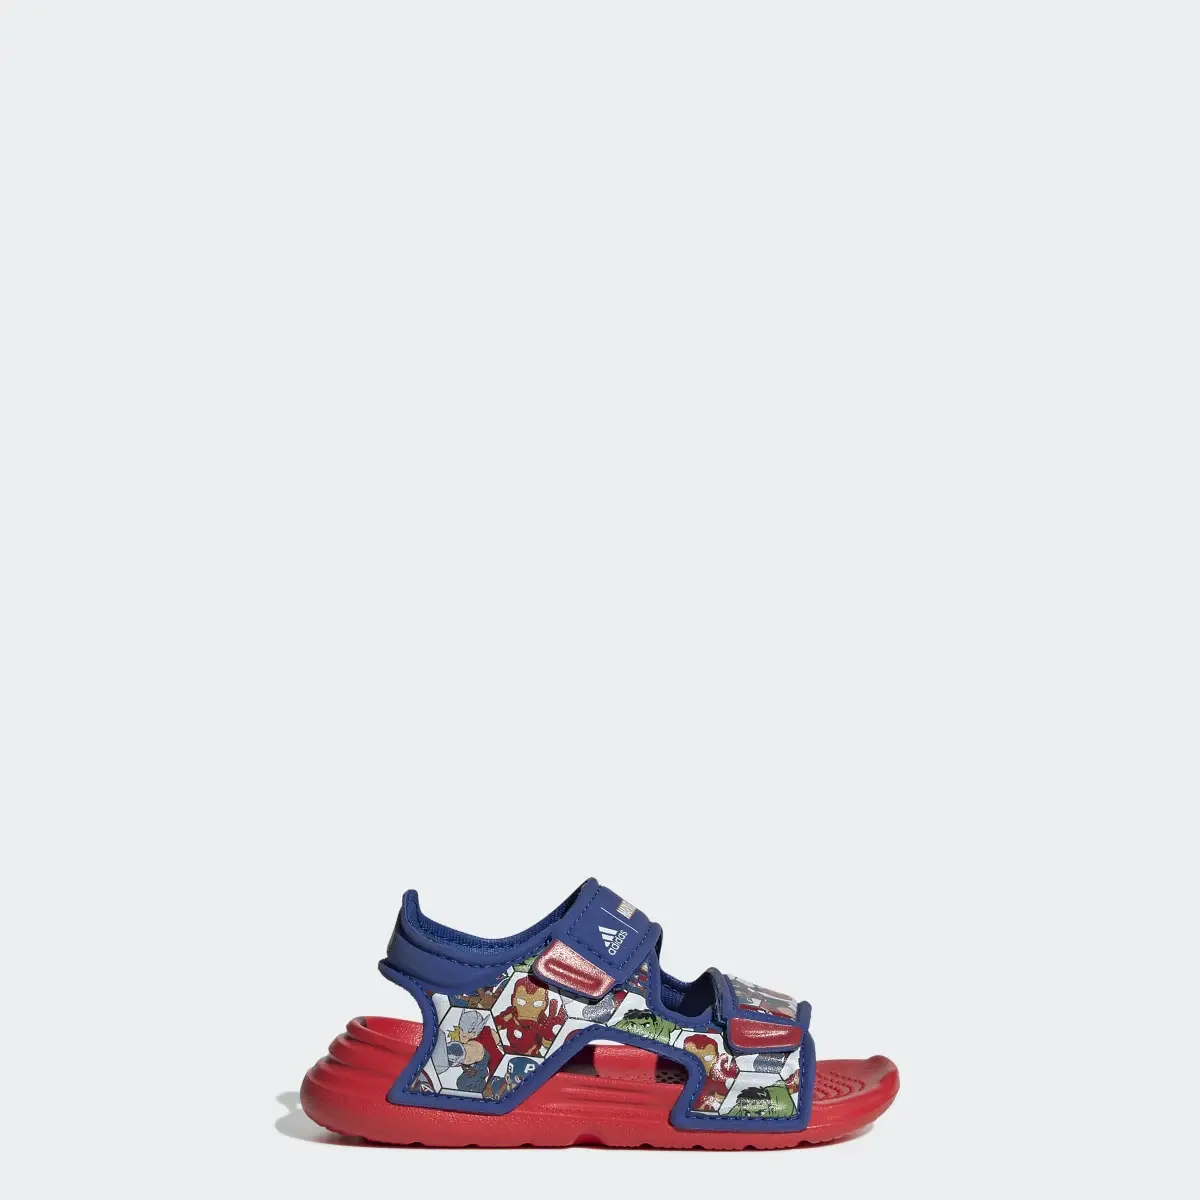 Adidas x Marvel AltaSwim Super Hero Adventures Sandals. 1